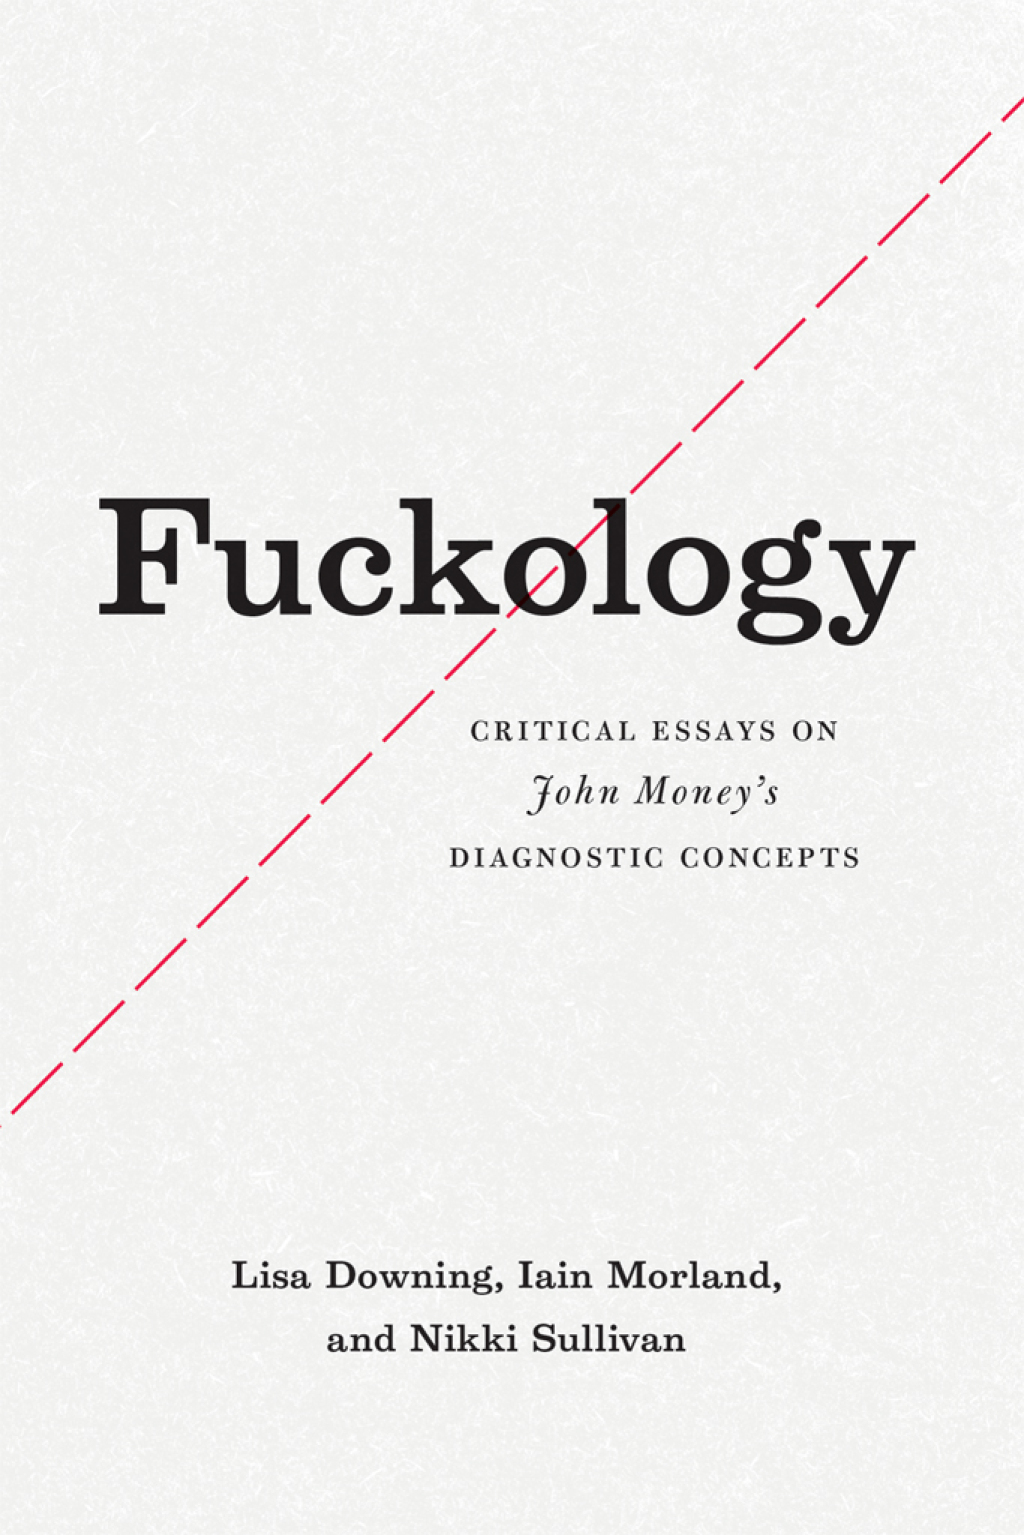 Fuckology (eBook) - Lisa Downing; Iain Morland; Nikki Sullivan